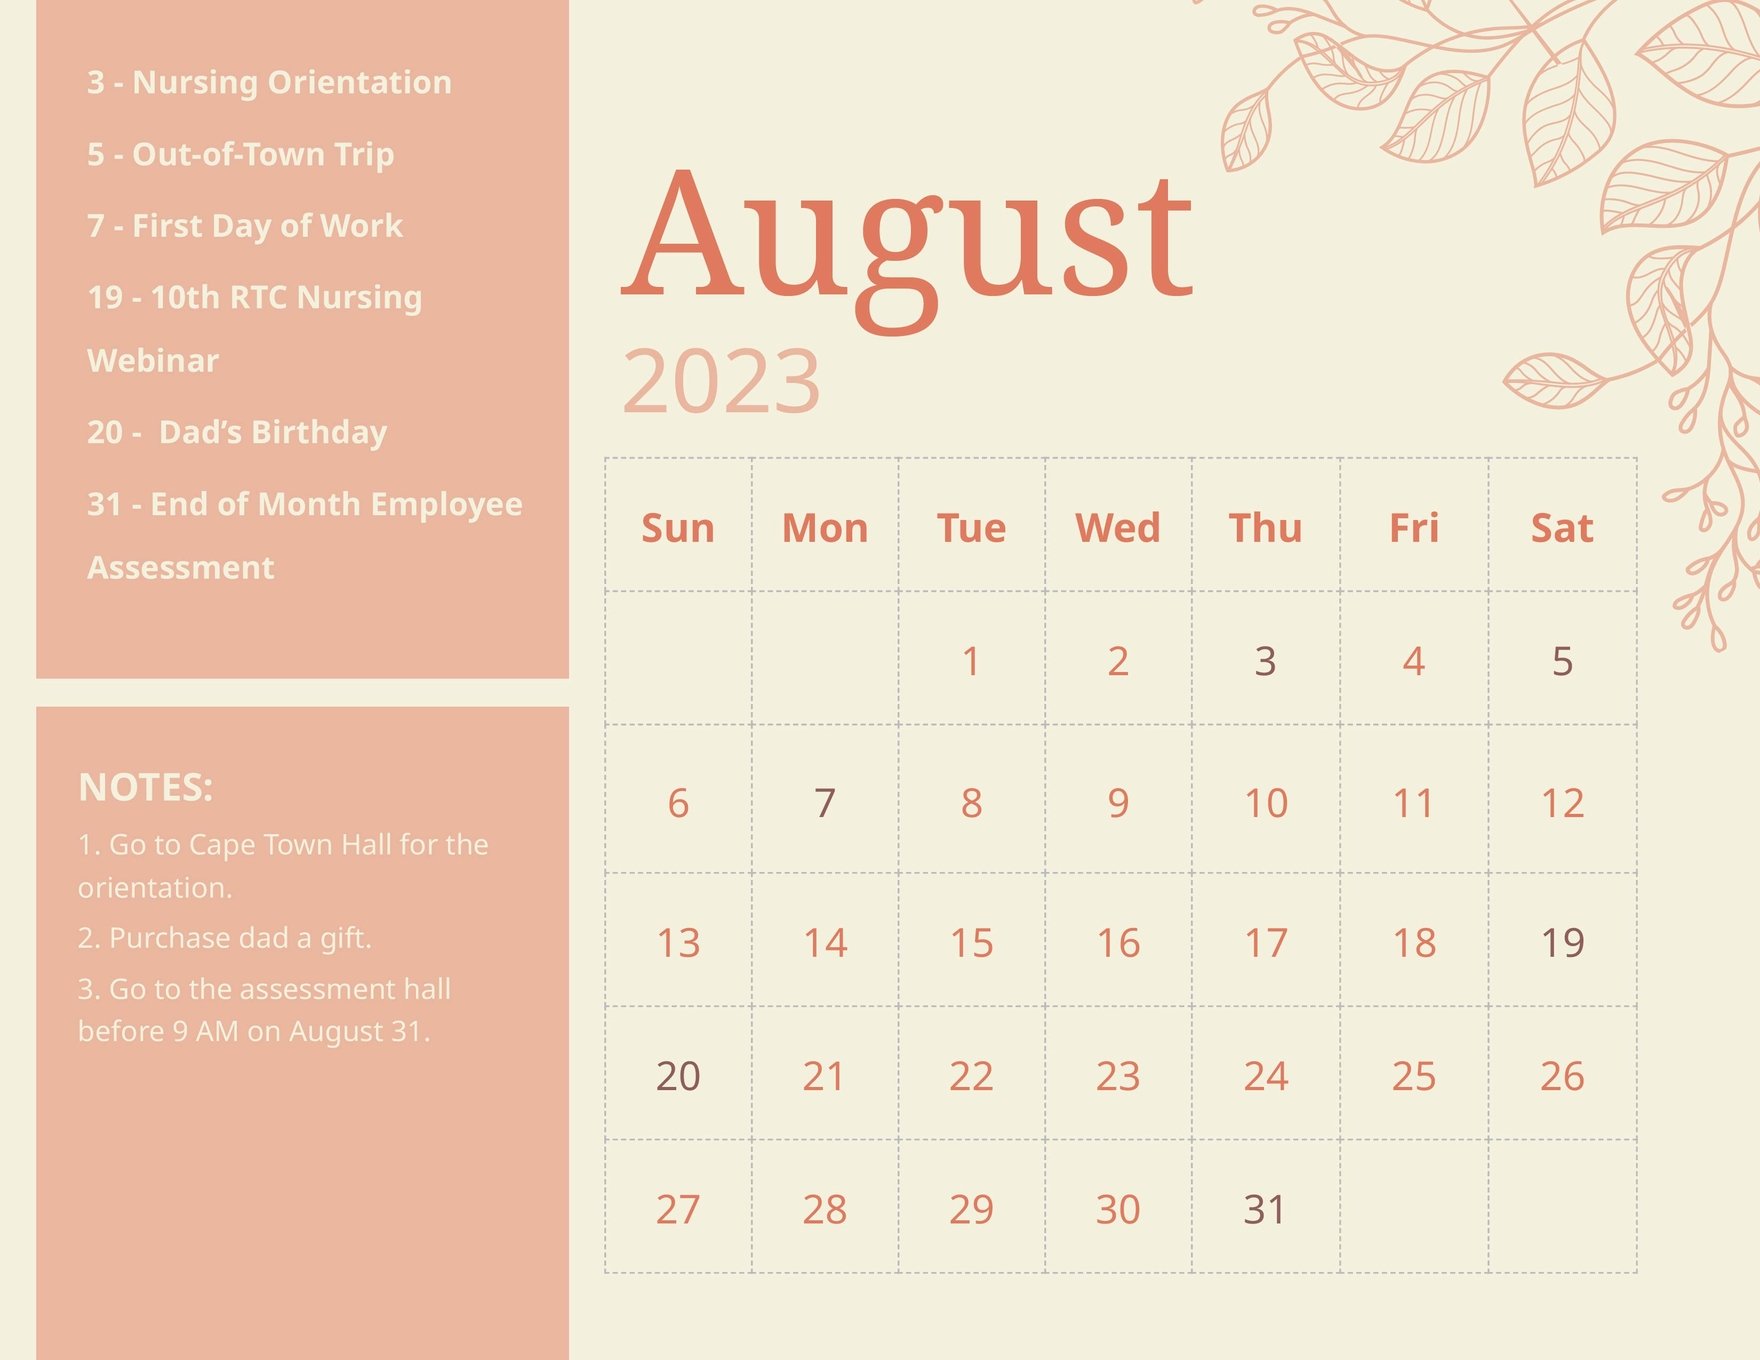 google-calendar-august-2023-get-calendar-2023-update